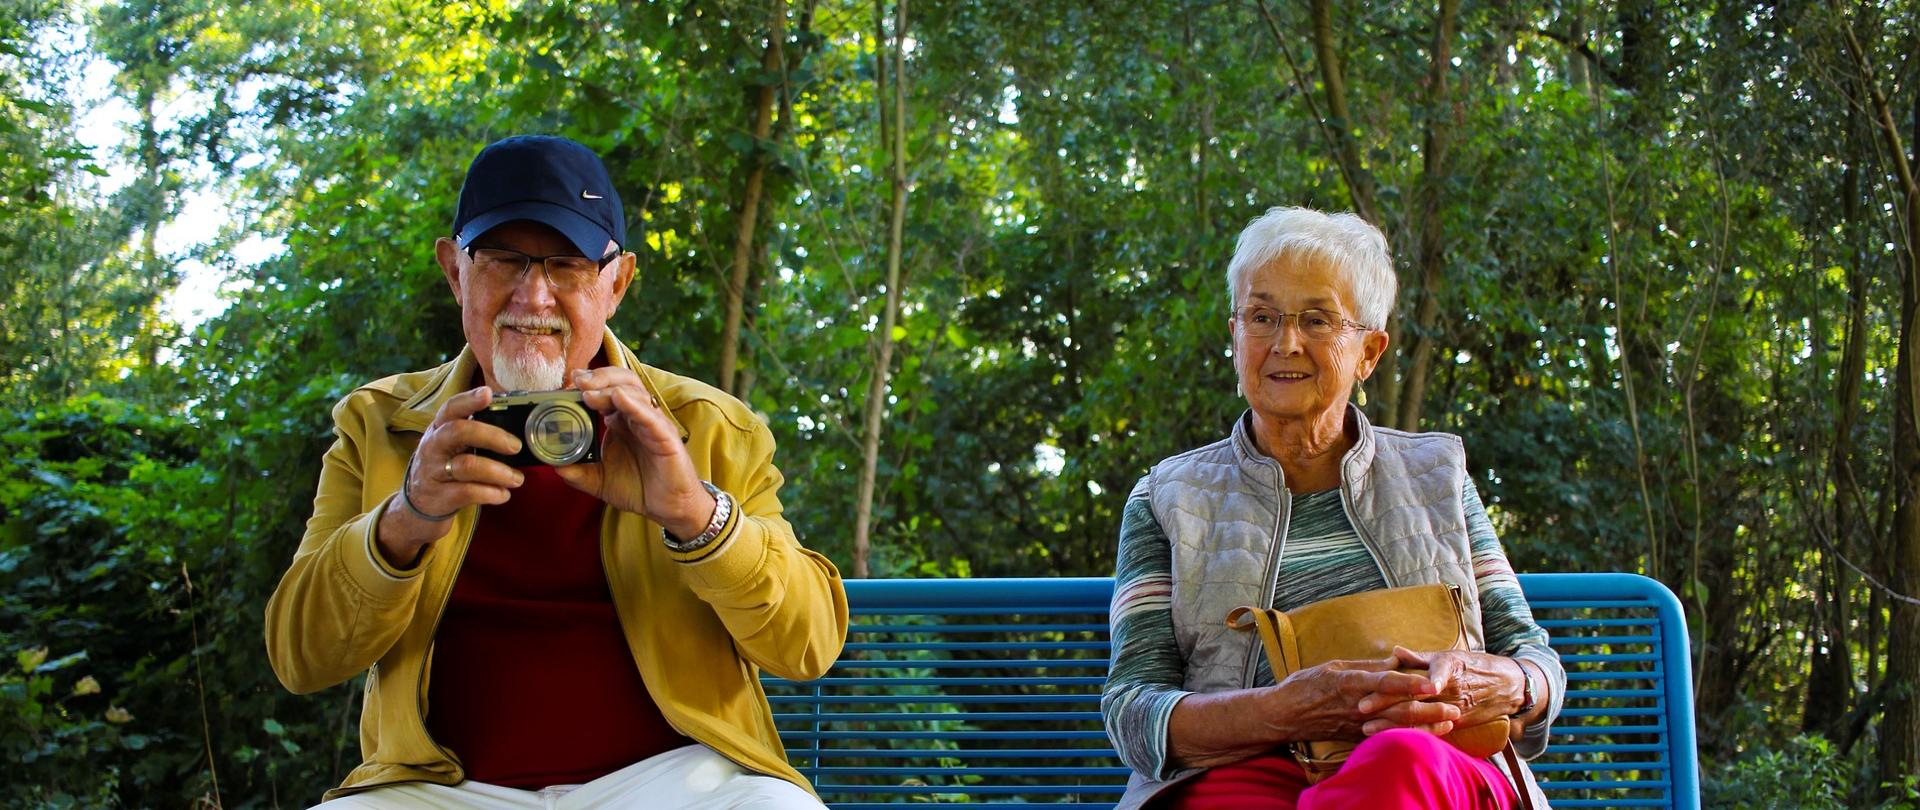 Dwie osoby siedzą na ławce w parku (zdjęcie wykonane na zewnątrz). Jedna z osób trzyma w ręce aparat fotograficzny.